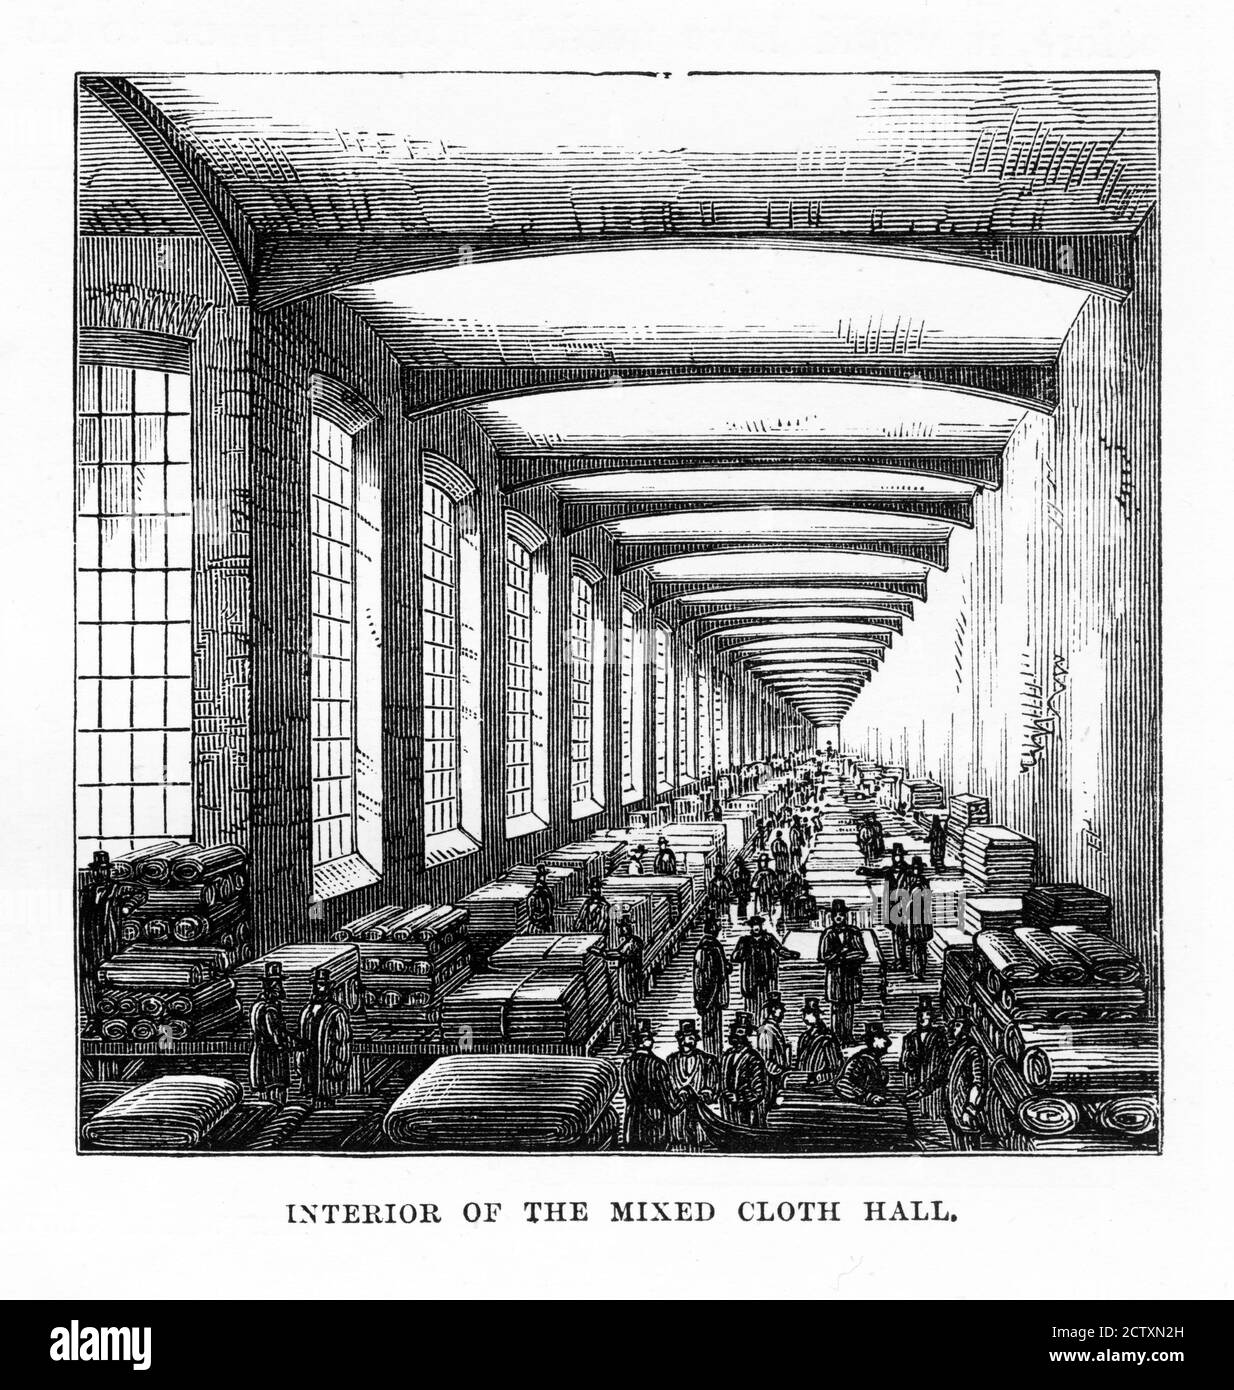 Intérieur du Mixed Cloth Hall, Leeds, Angleterre victorienne Banque D'Images